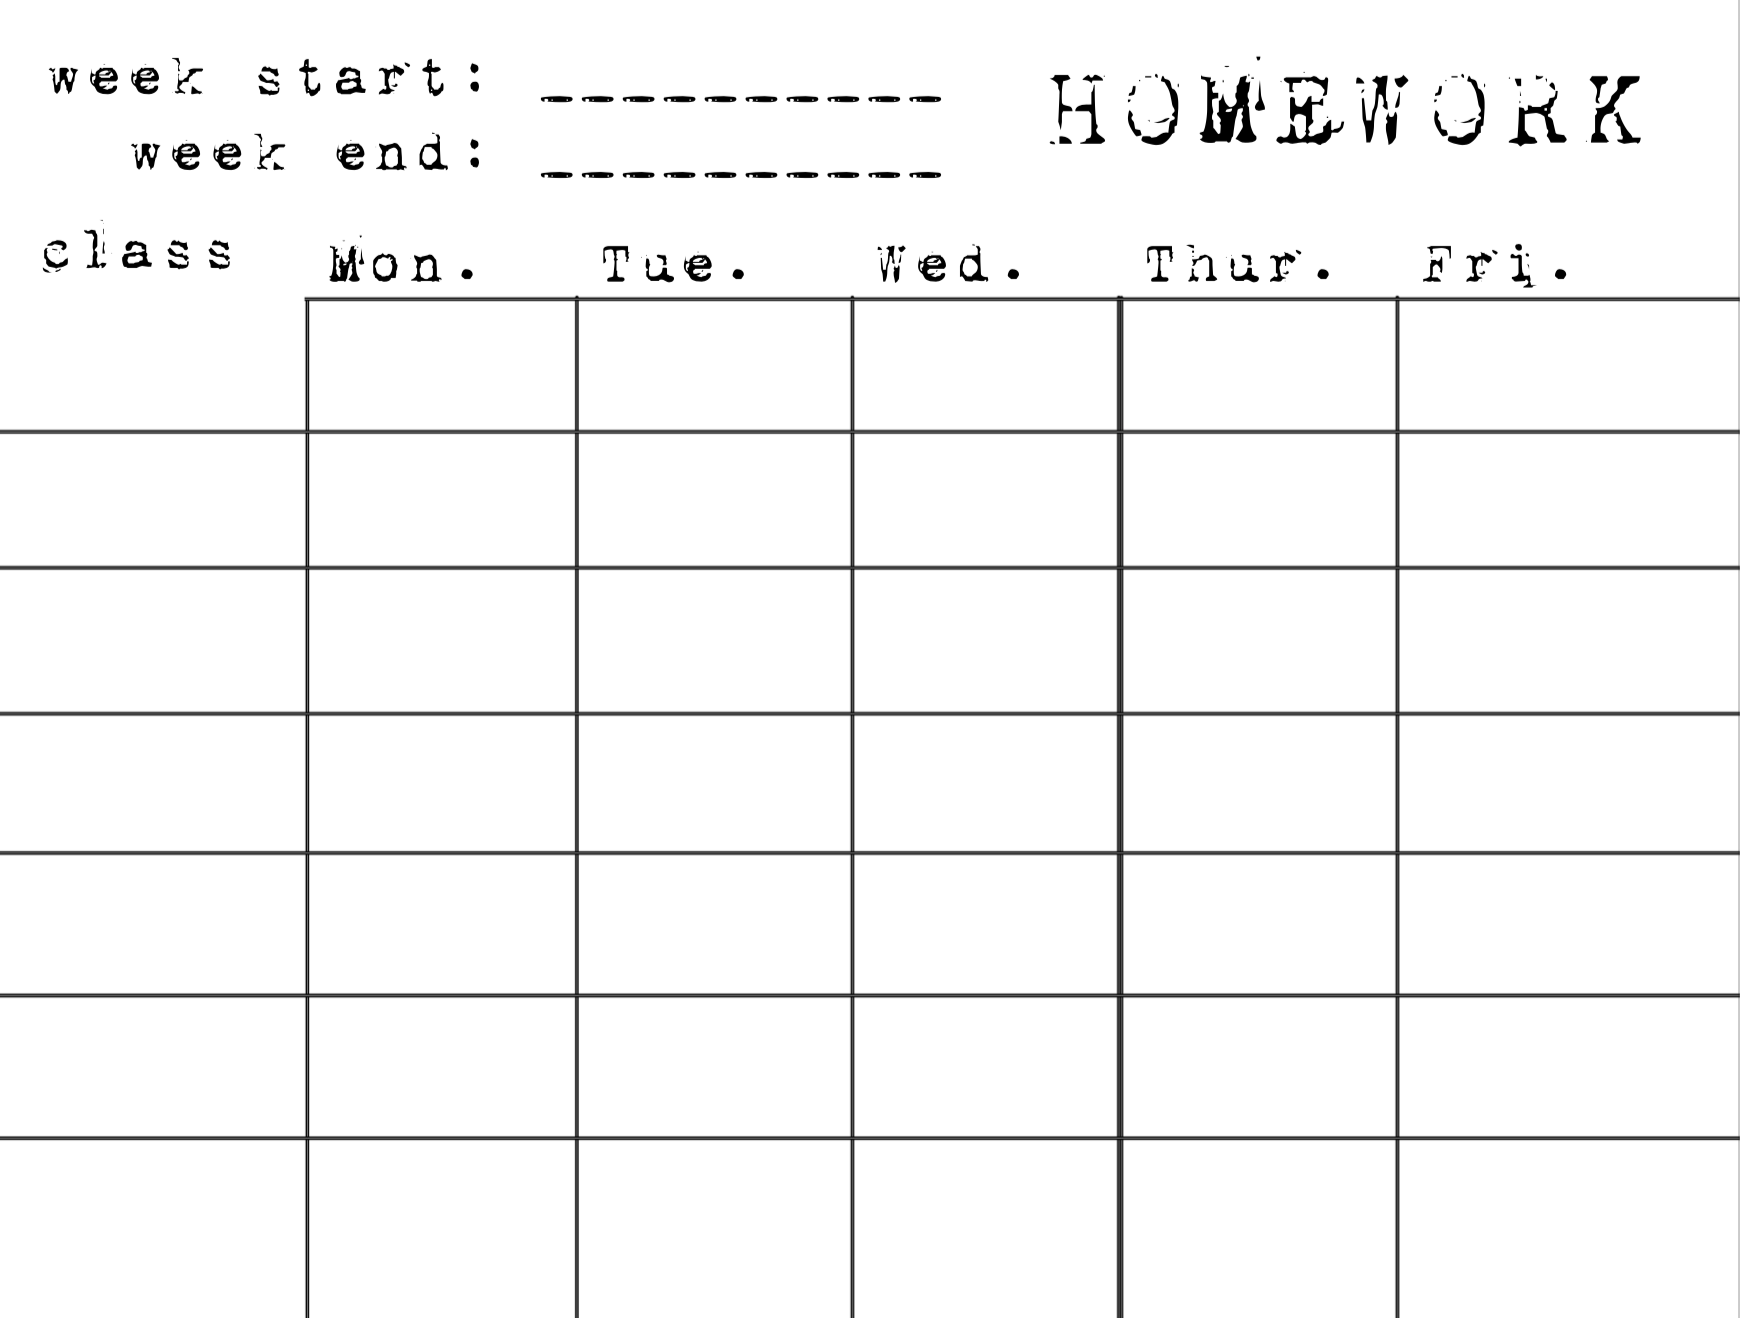 Homework Sheet 1942 Report